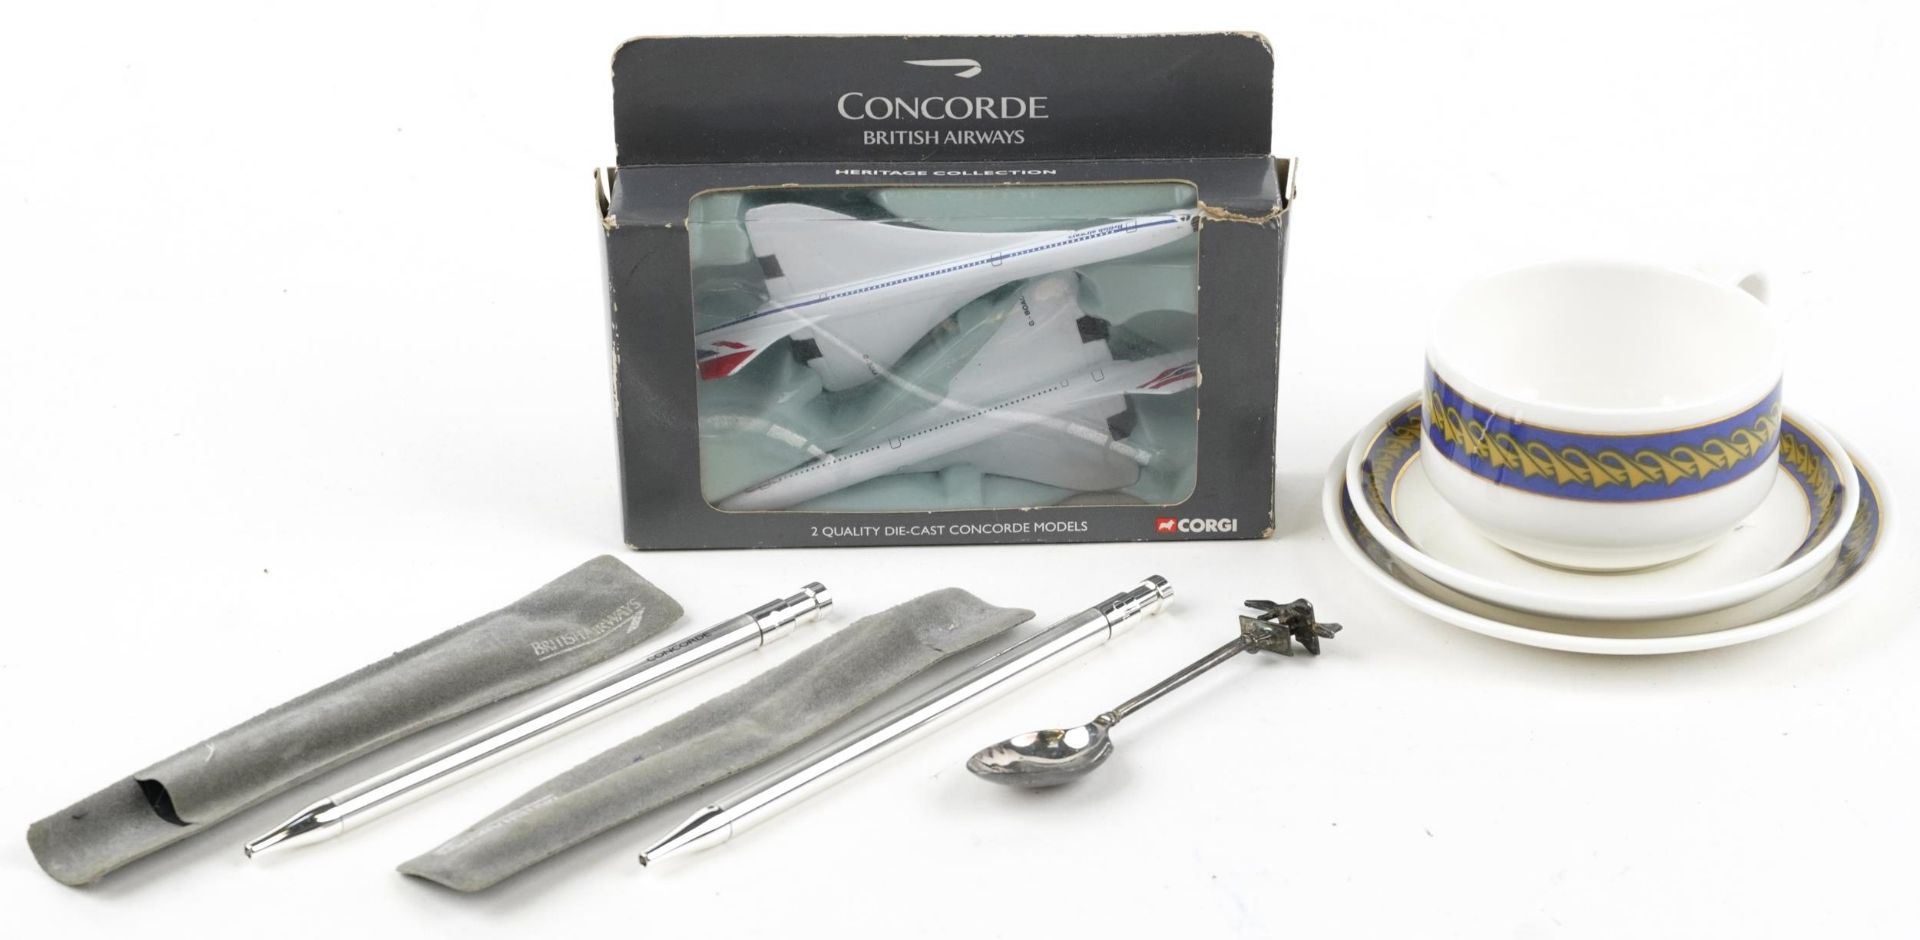 Concorde memorabilia including Royal Doulton British Airways trio and diecast aeroplanes by Corgi